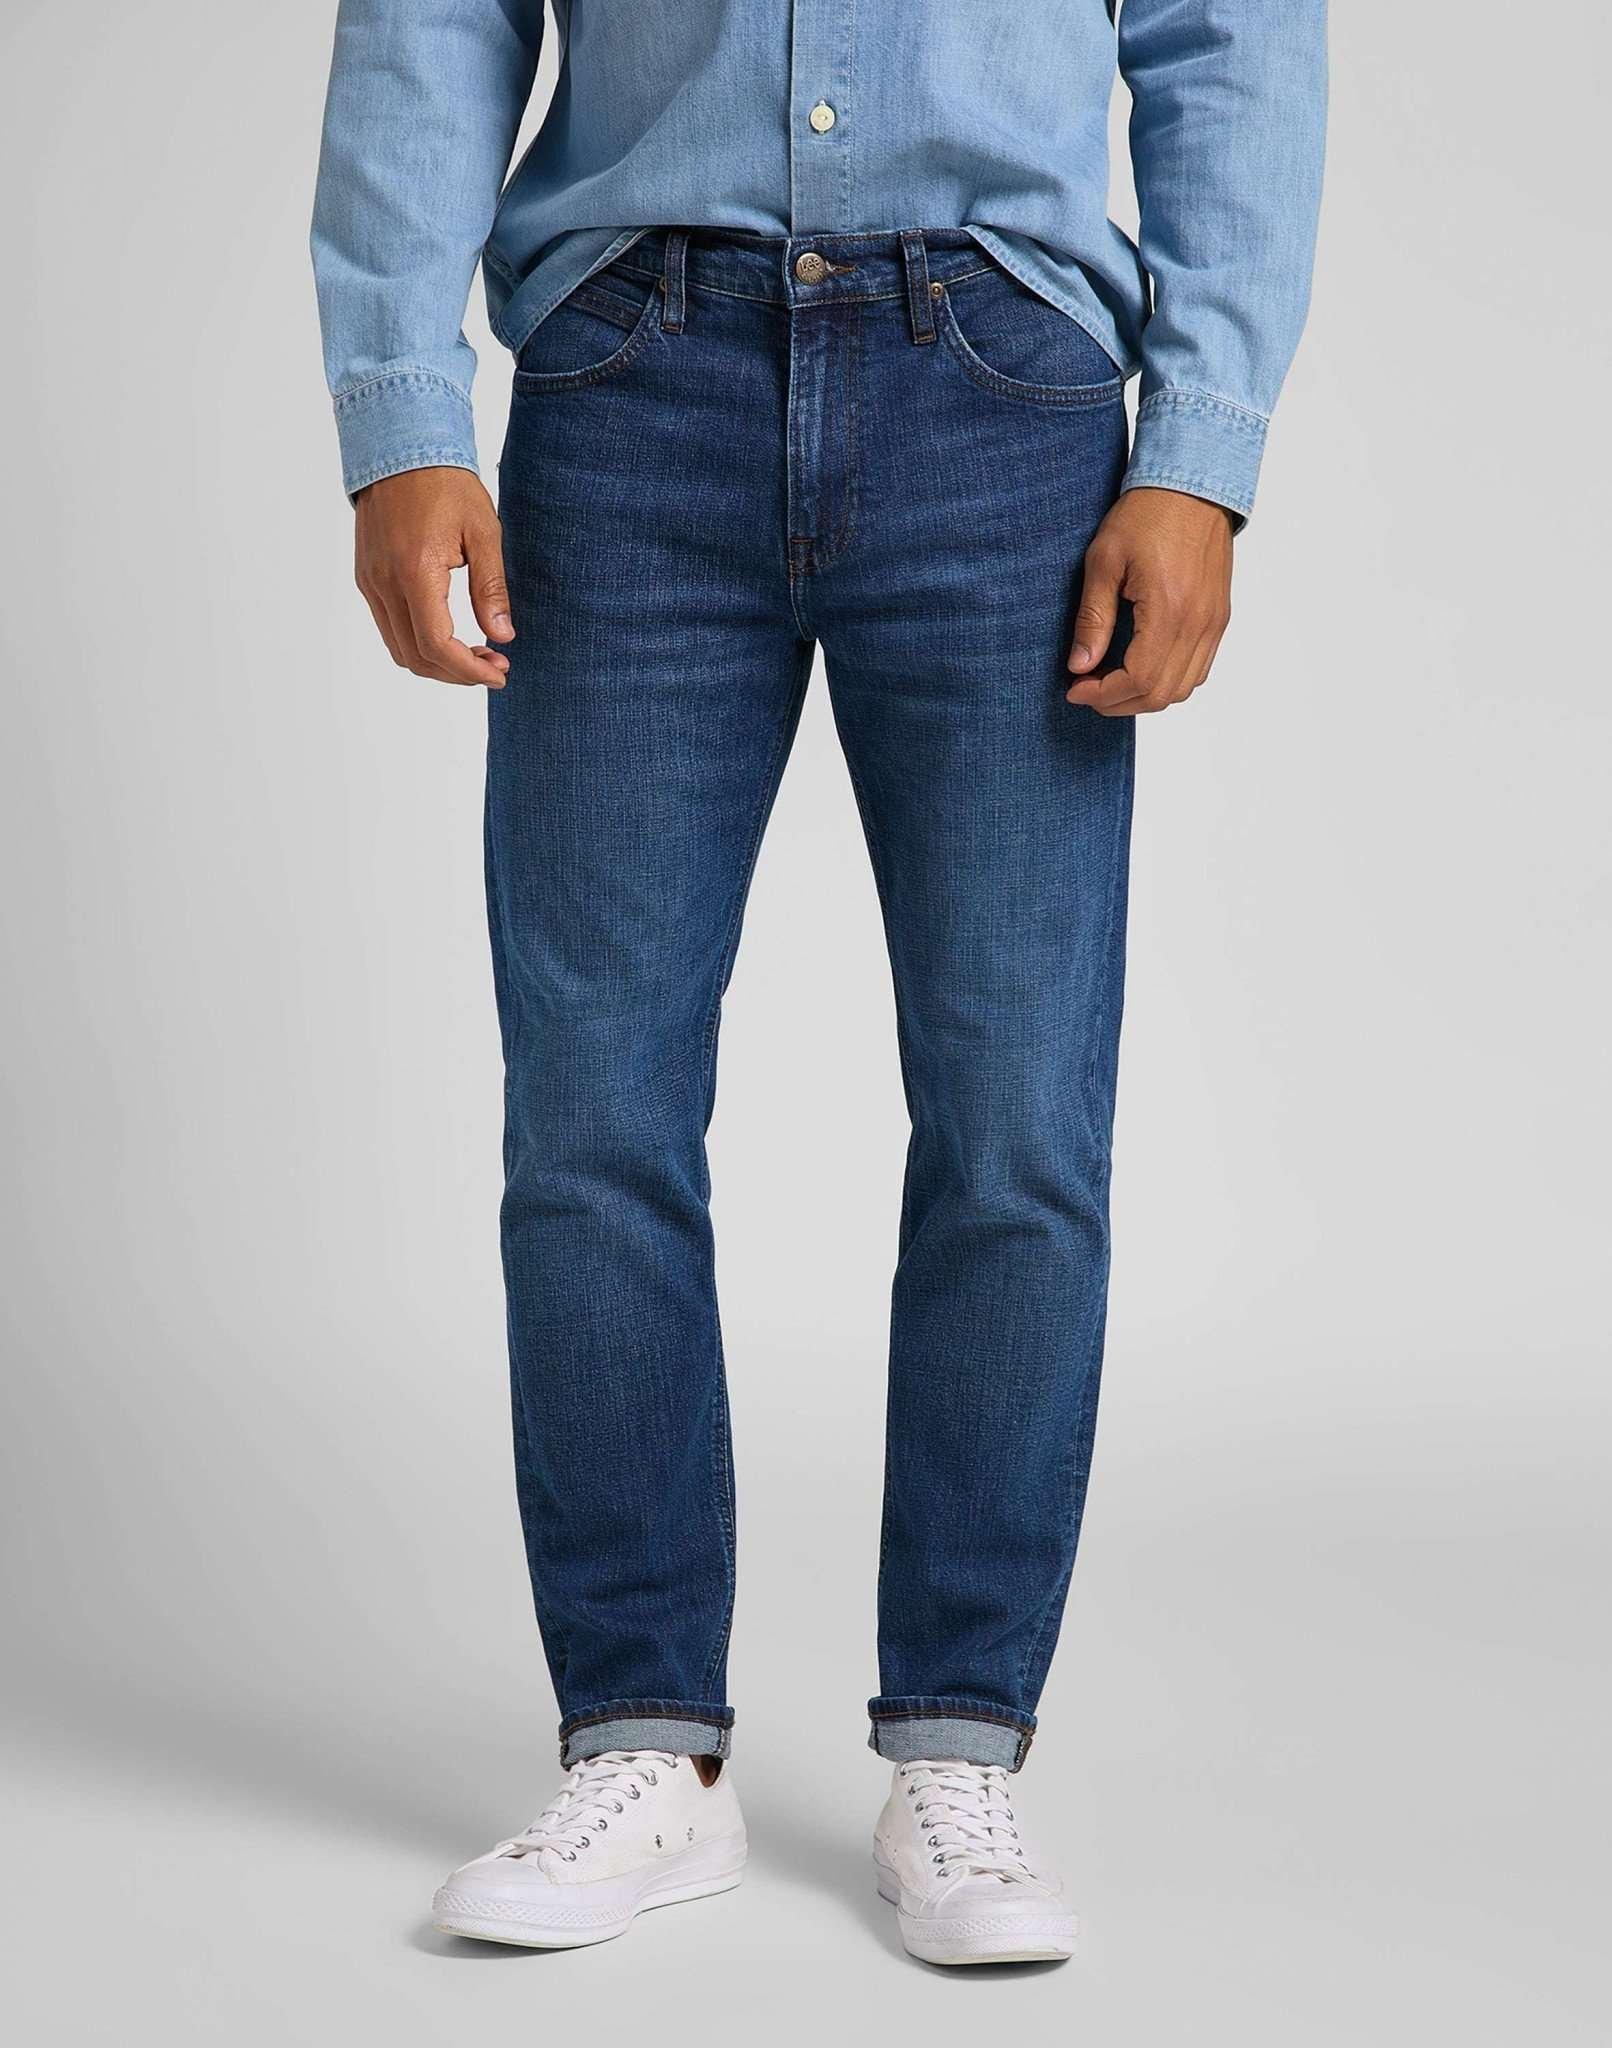 Jeans Straight Leg Austin Herren Blau Denim L30/W34 von Lee